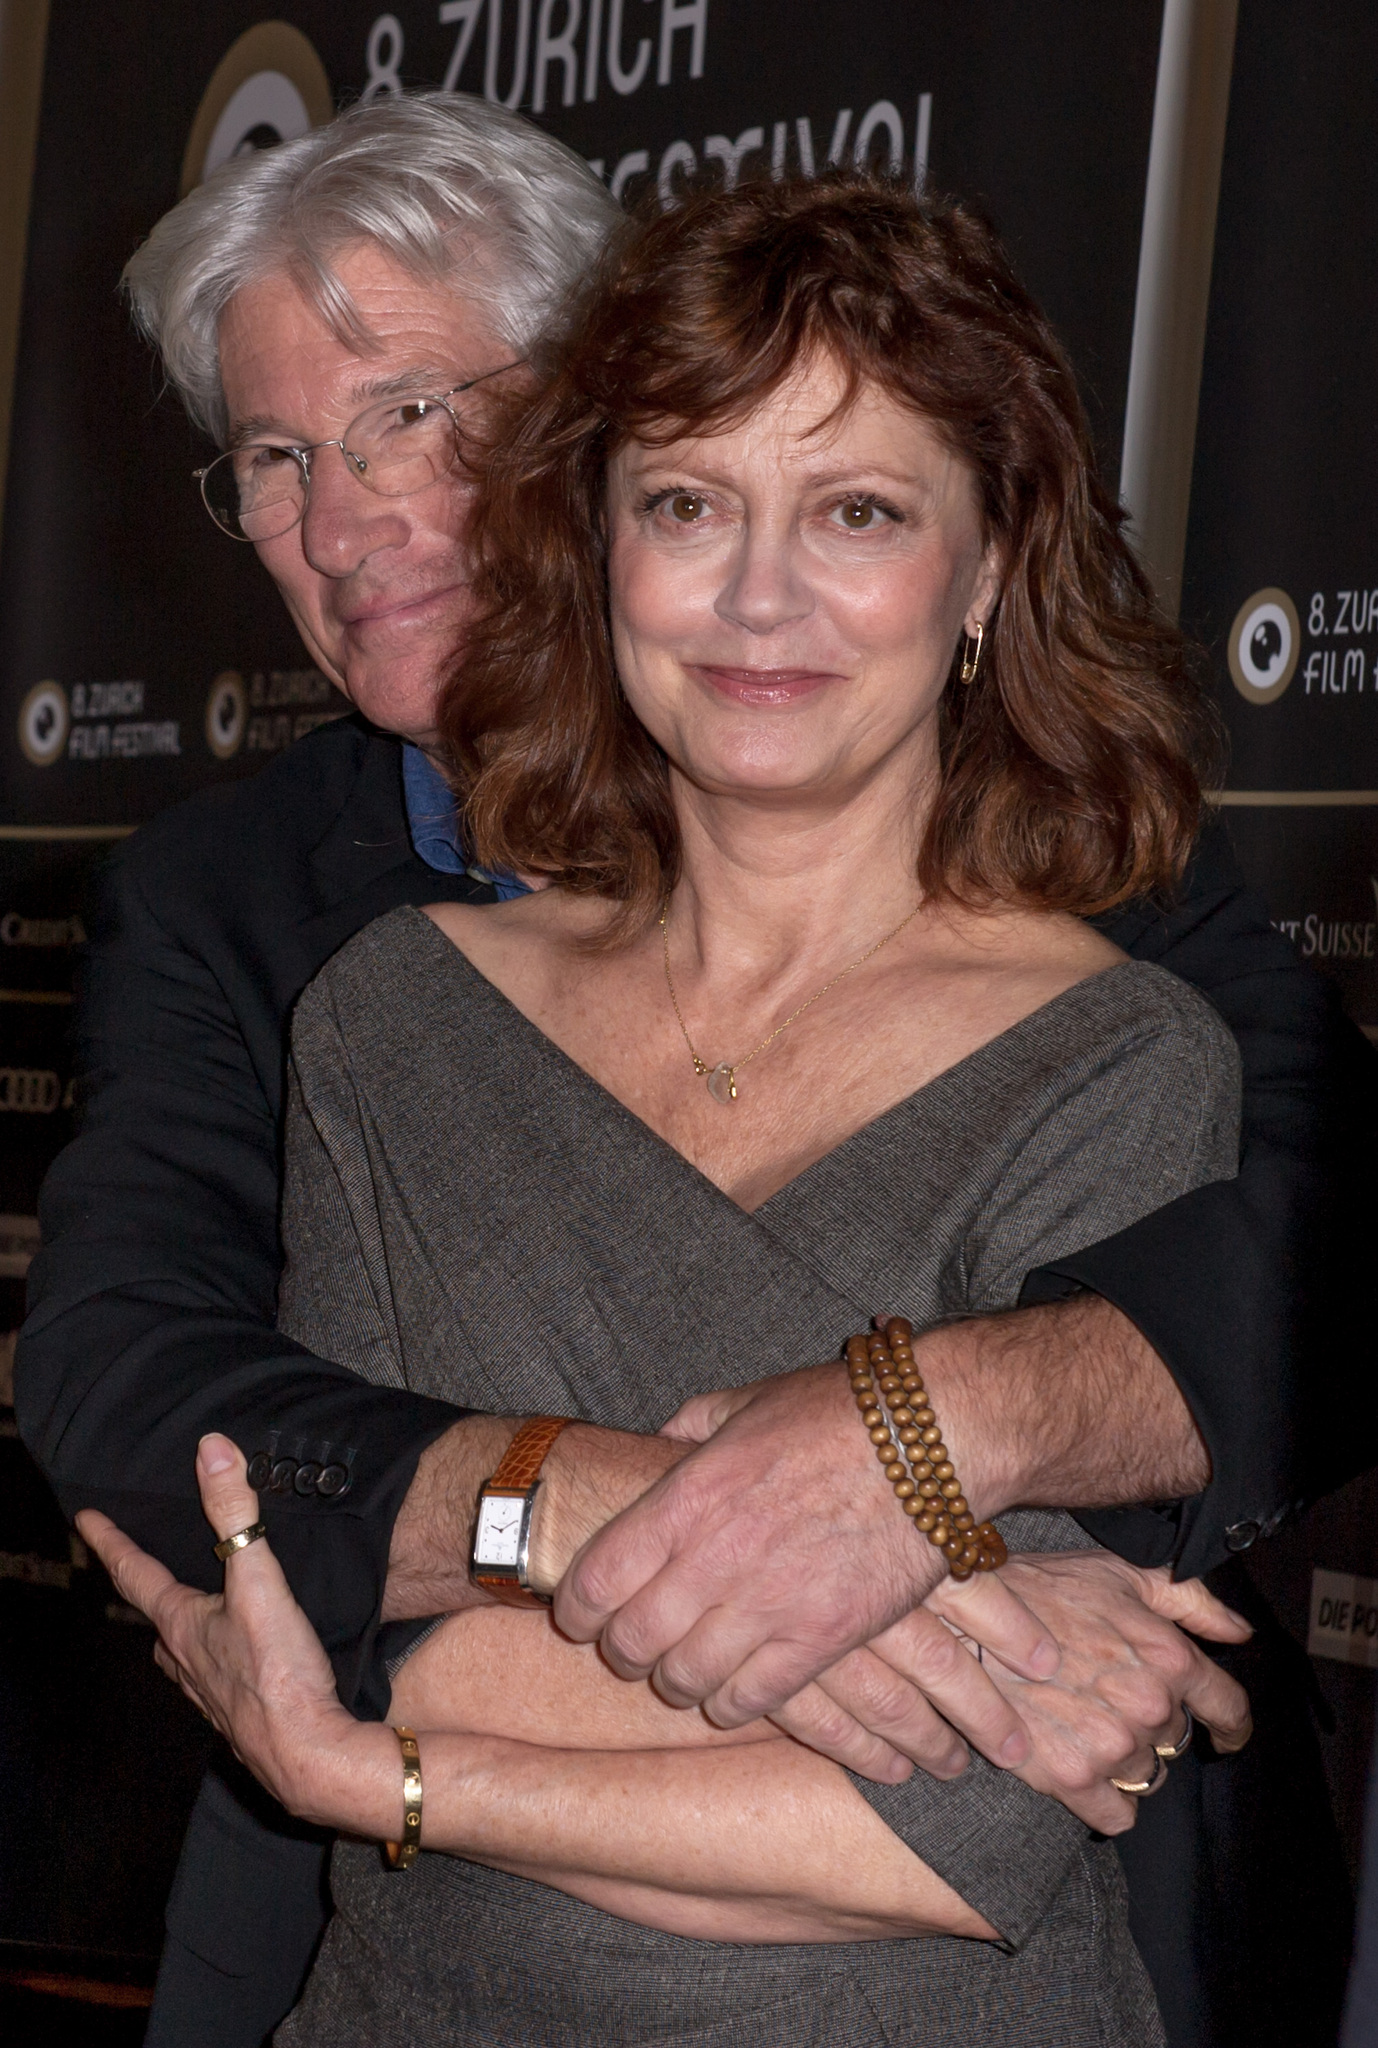 Richard Gere and Susan Sarandon at event of Apgaulinga aistra (2012)